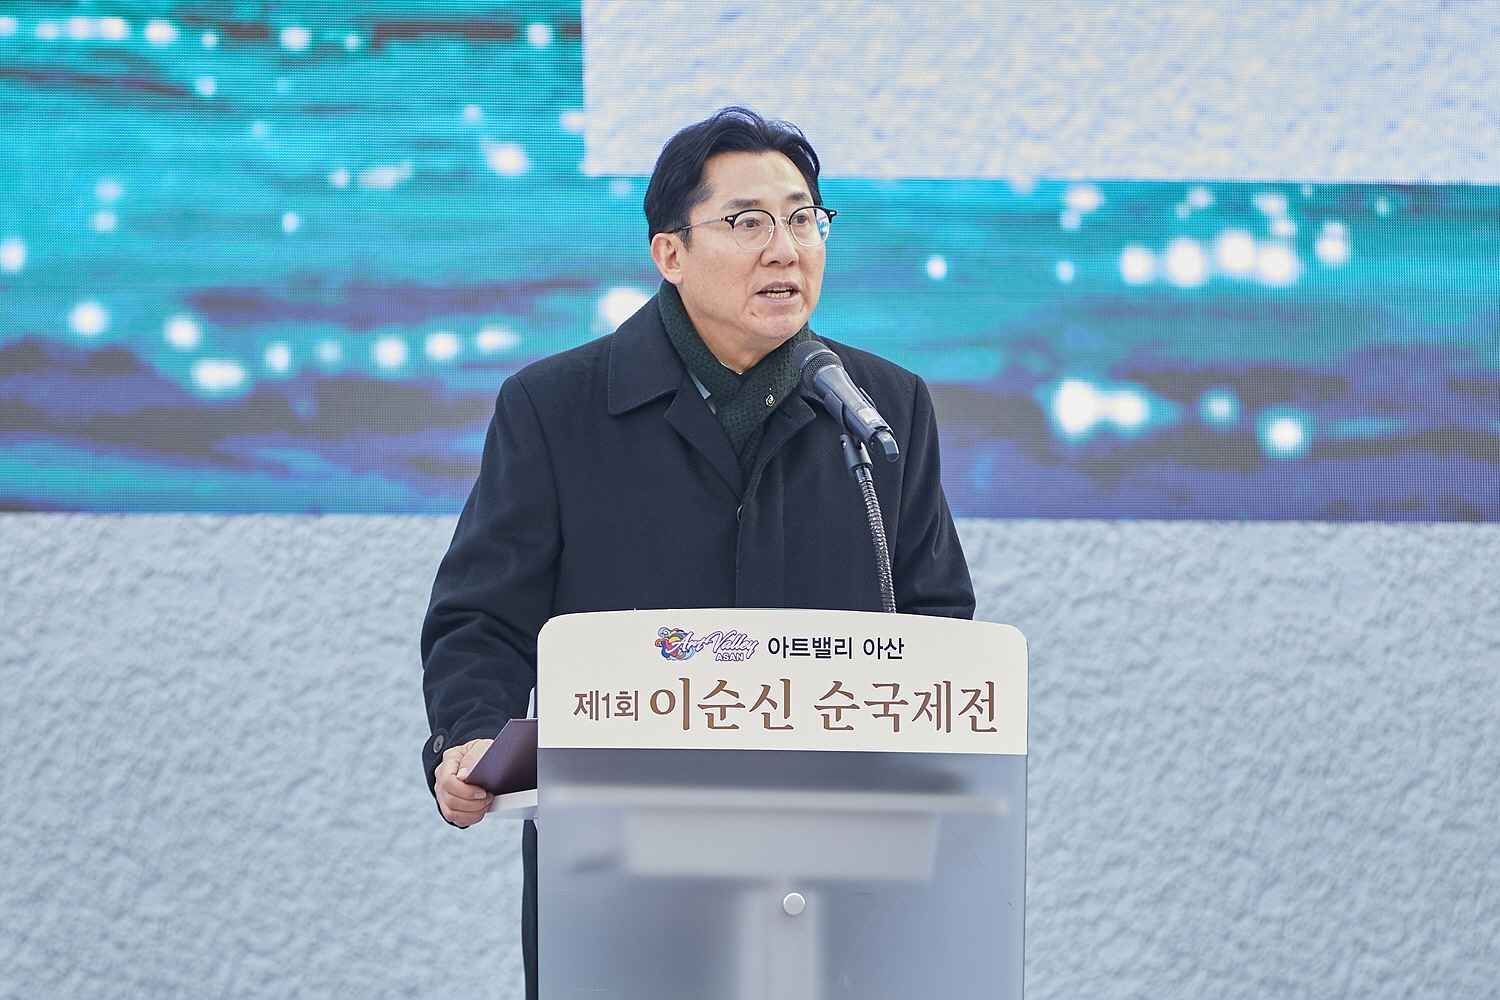 박경귀 시장 “이순신의 혼이 숨 쉬는 아산” 순국주간 선포 관련사진